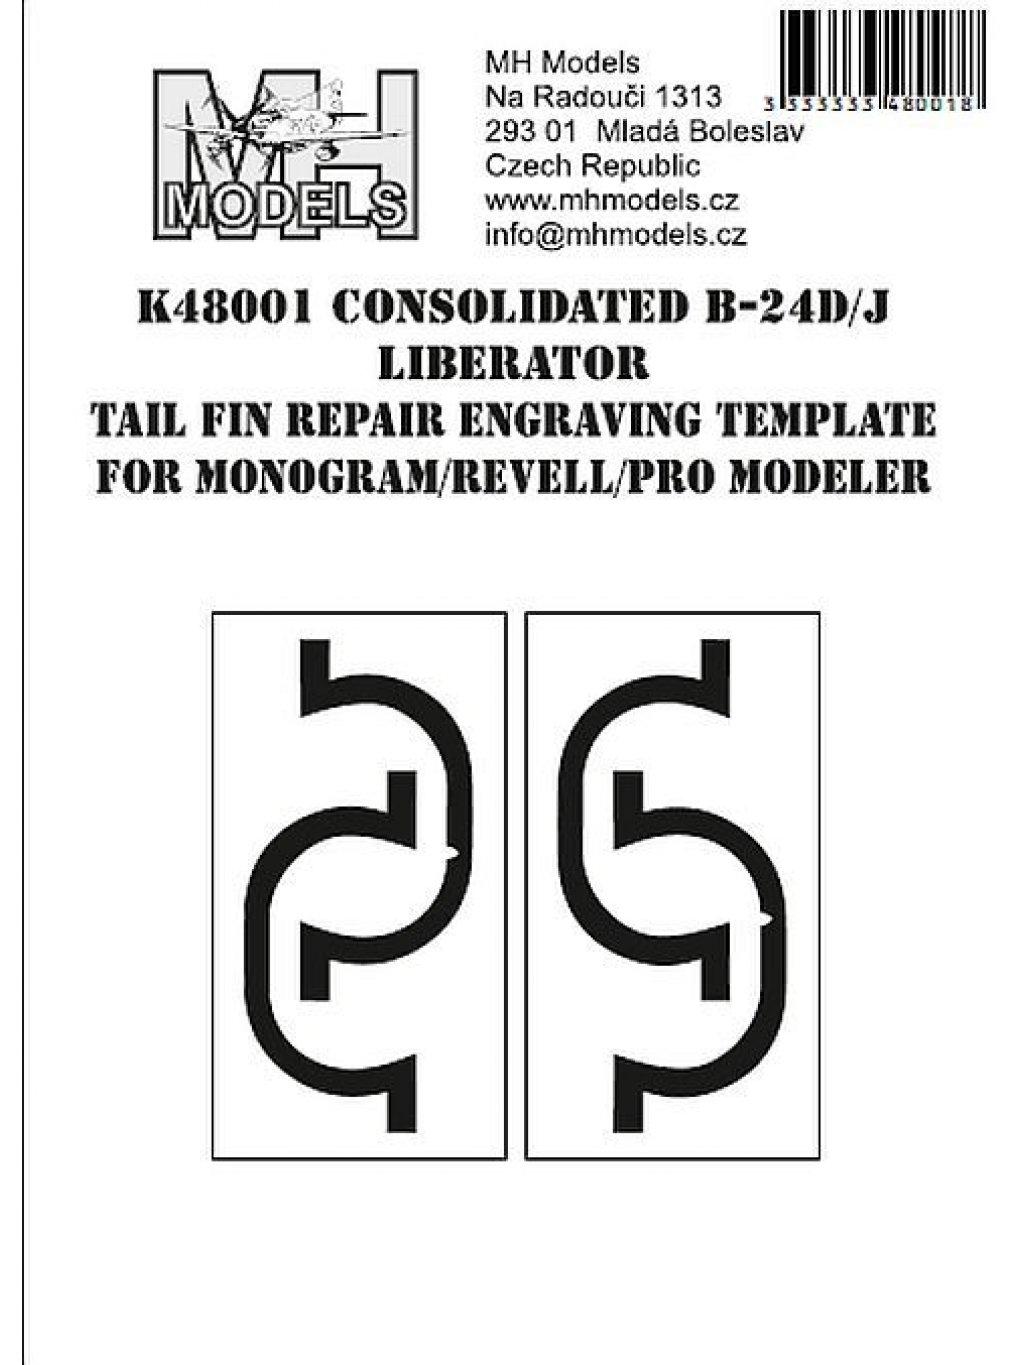 Consolidated B-24D/J Liberator přerývací šablona pro odledovací zařízení na SOP pro Monogram/Revell/Pro Modeler